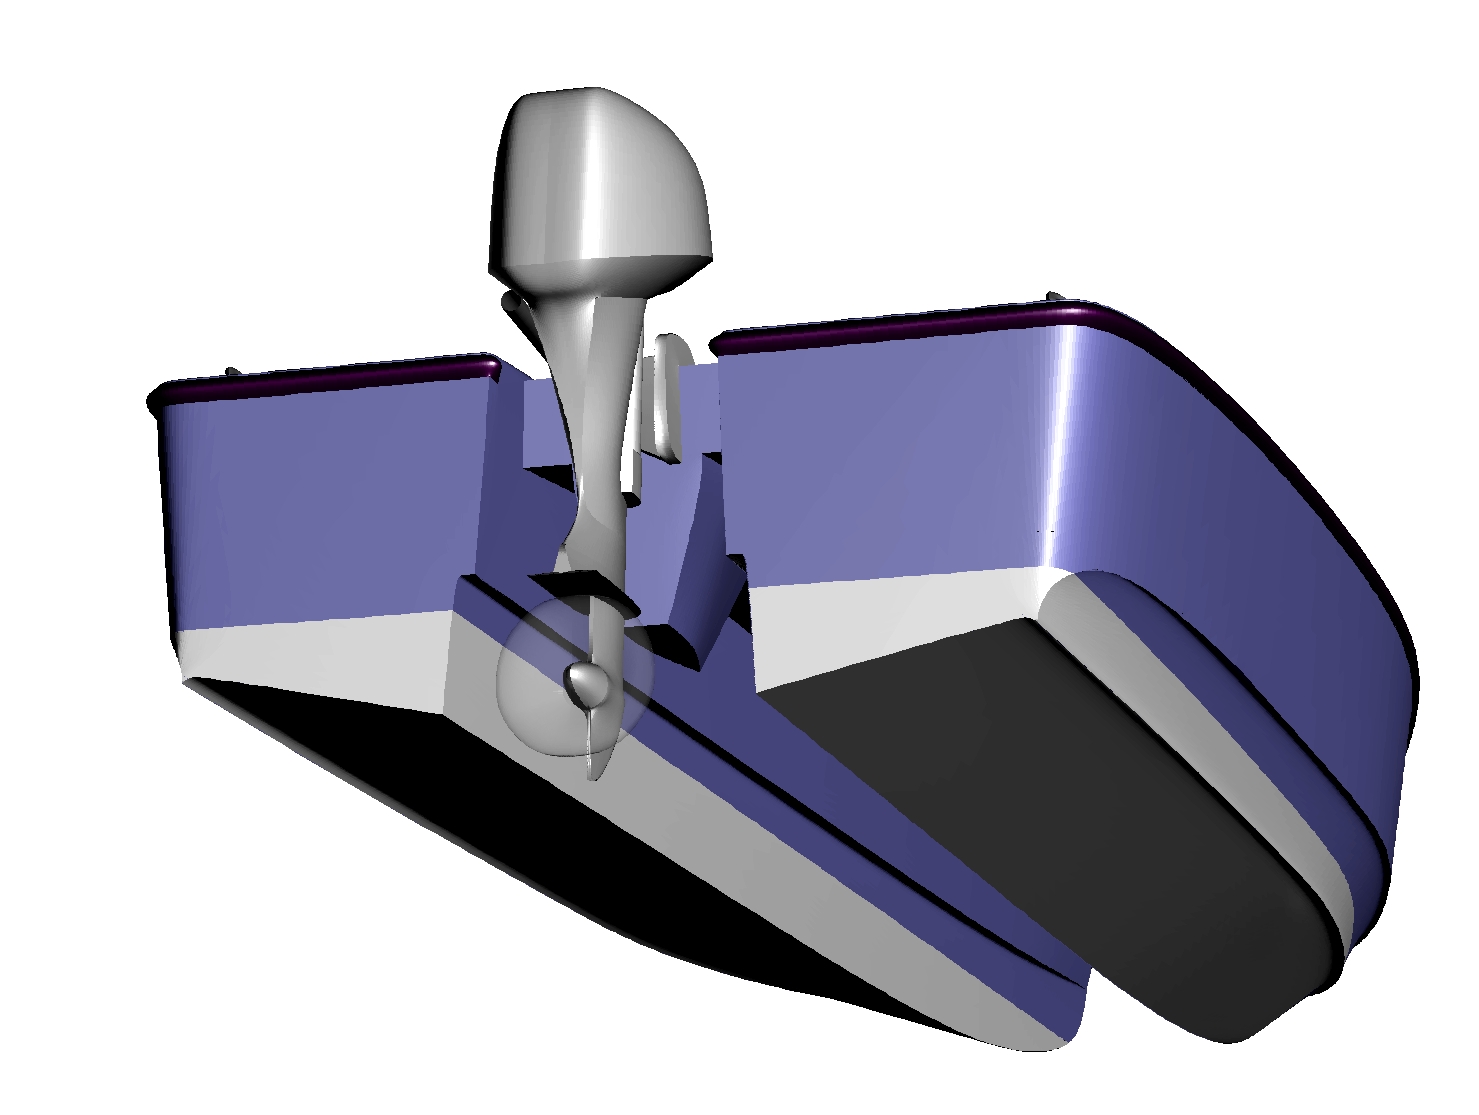 Outboard Motor Transom Design Boat Design Net